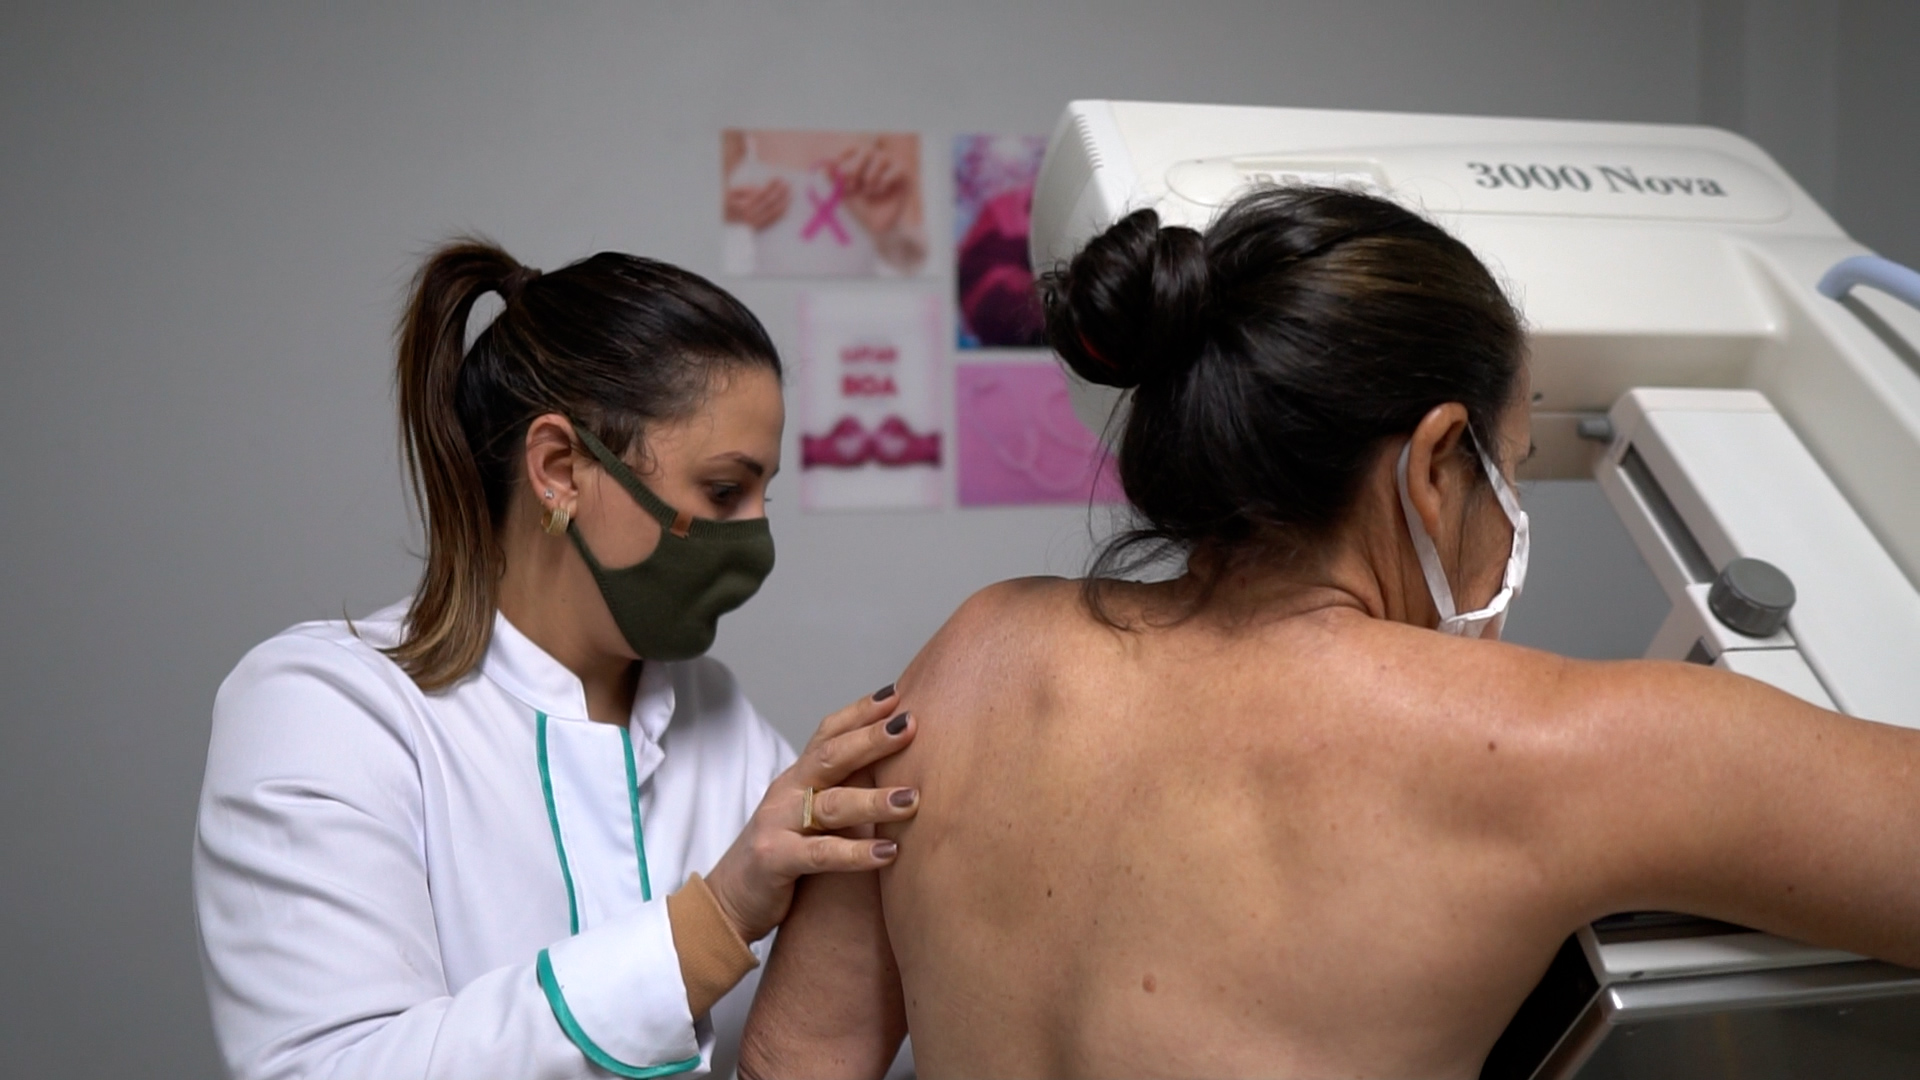 Agendamentos para exames gratuitos de mamografia estão abertos em Cascavel